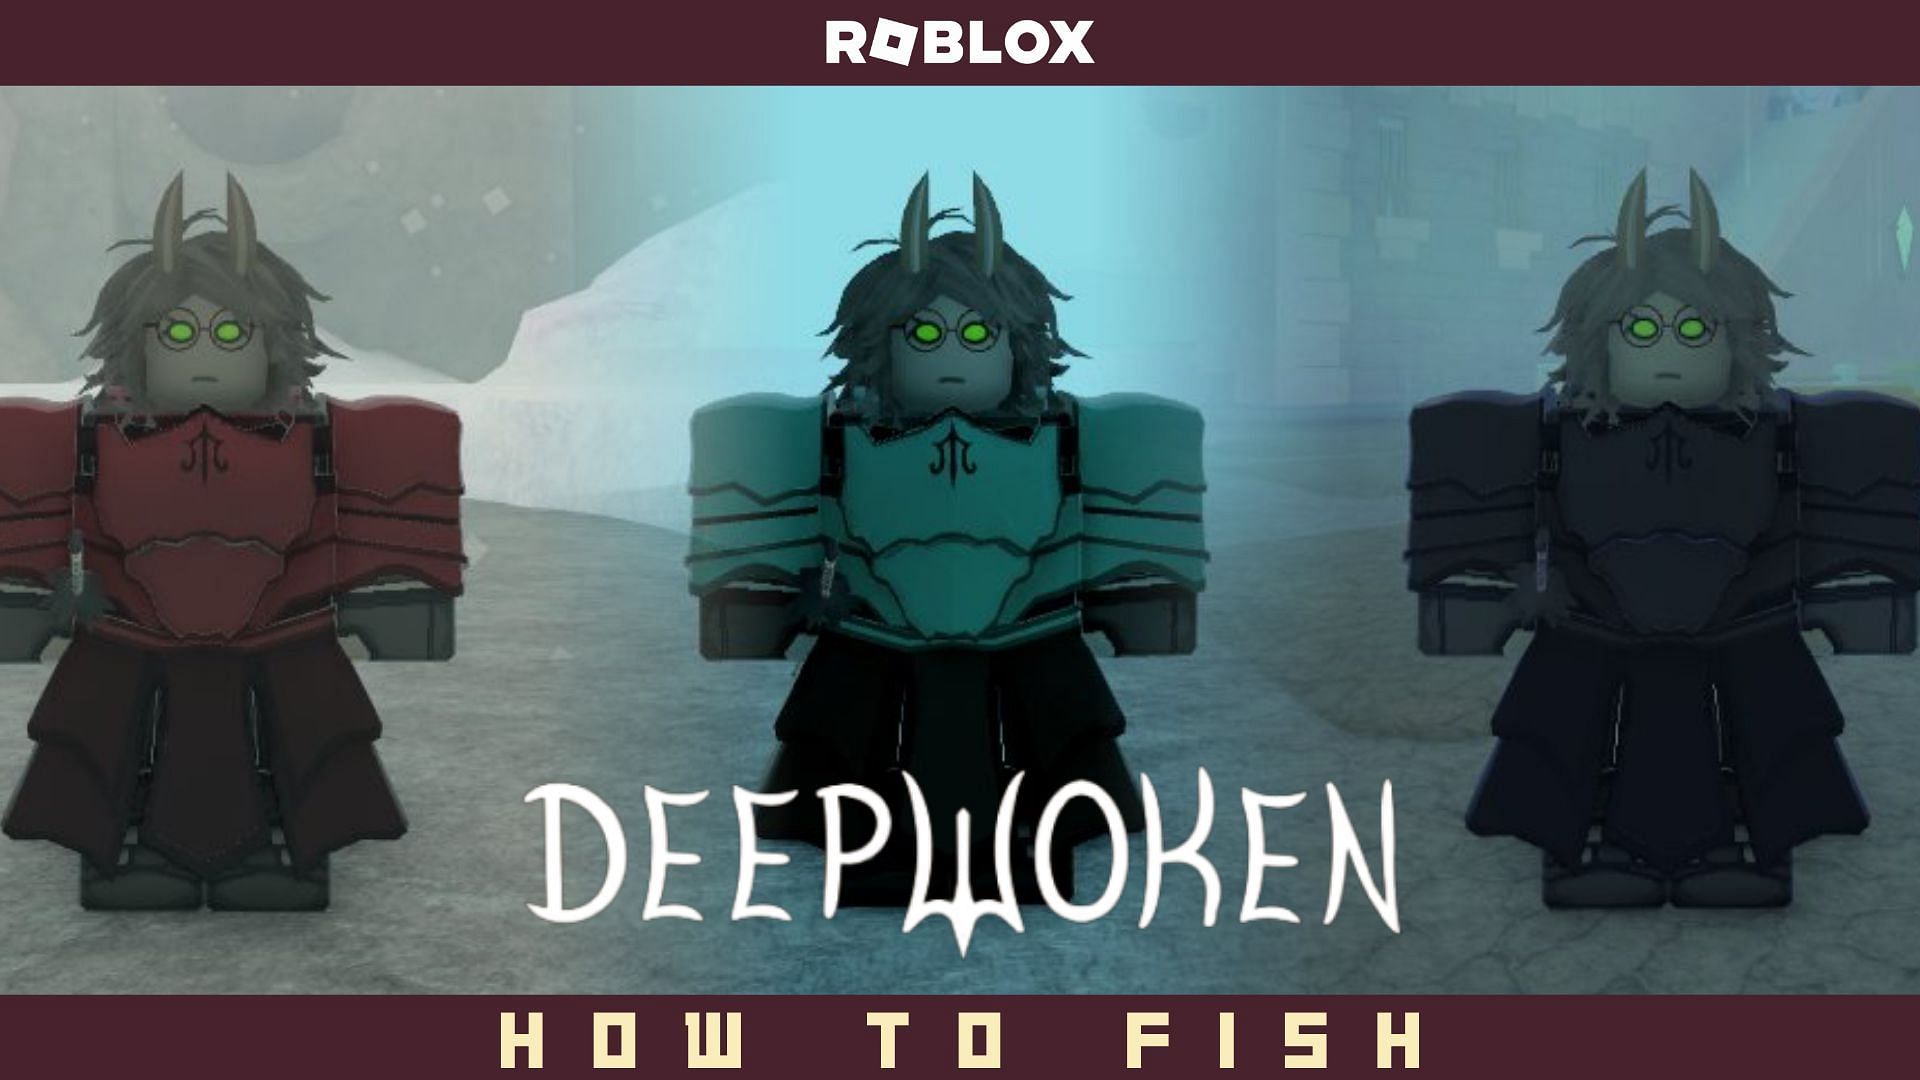 How to farm in deepwoken #roblox #howto #deepwoken #thedeep #views